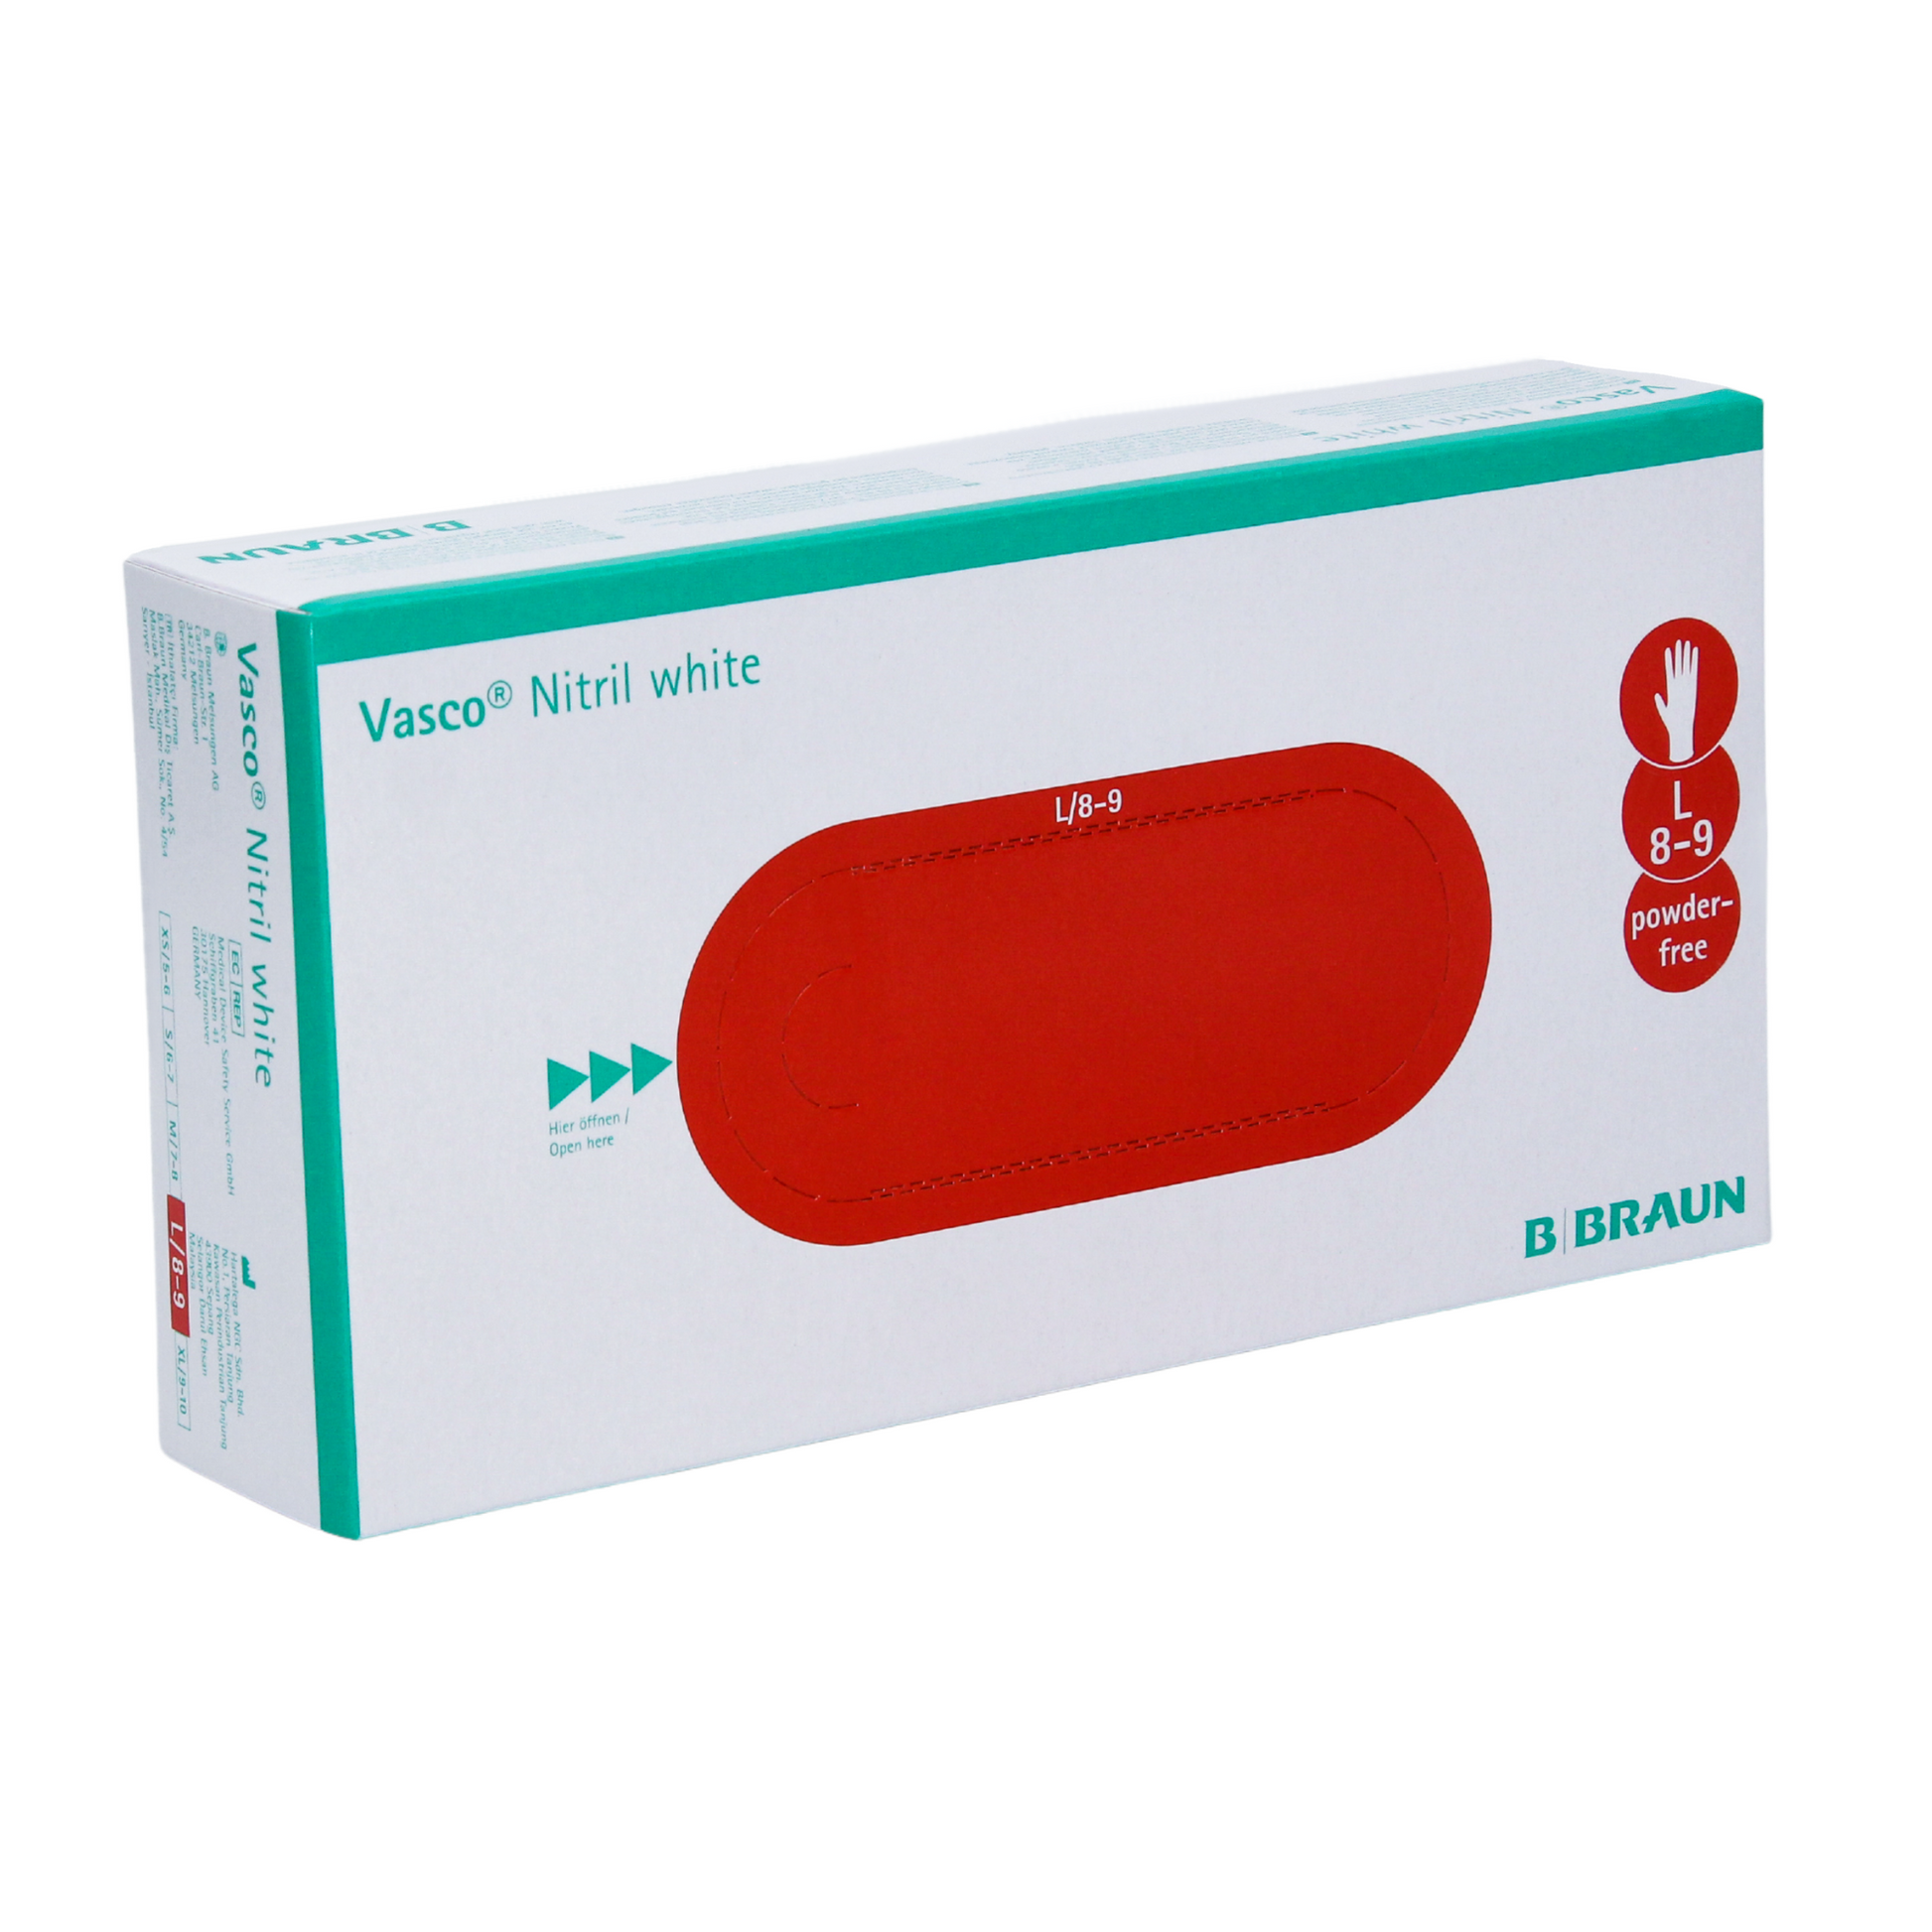 Eine Schachtel B. Braun Vasco® Nitril weiße Einmalhandschuhe, Größe L/8-9, mit einem roten Oval als Hinweis auf Handschuhgröße und -typ. (B. Braun Melsungen AG)